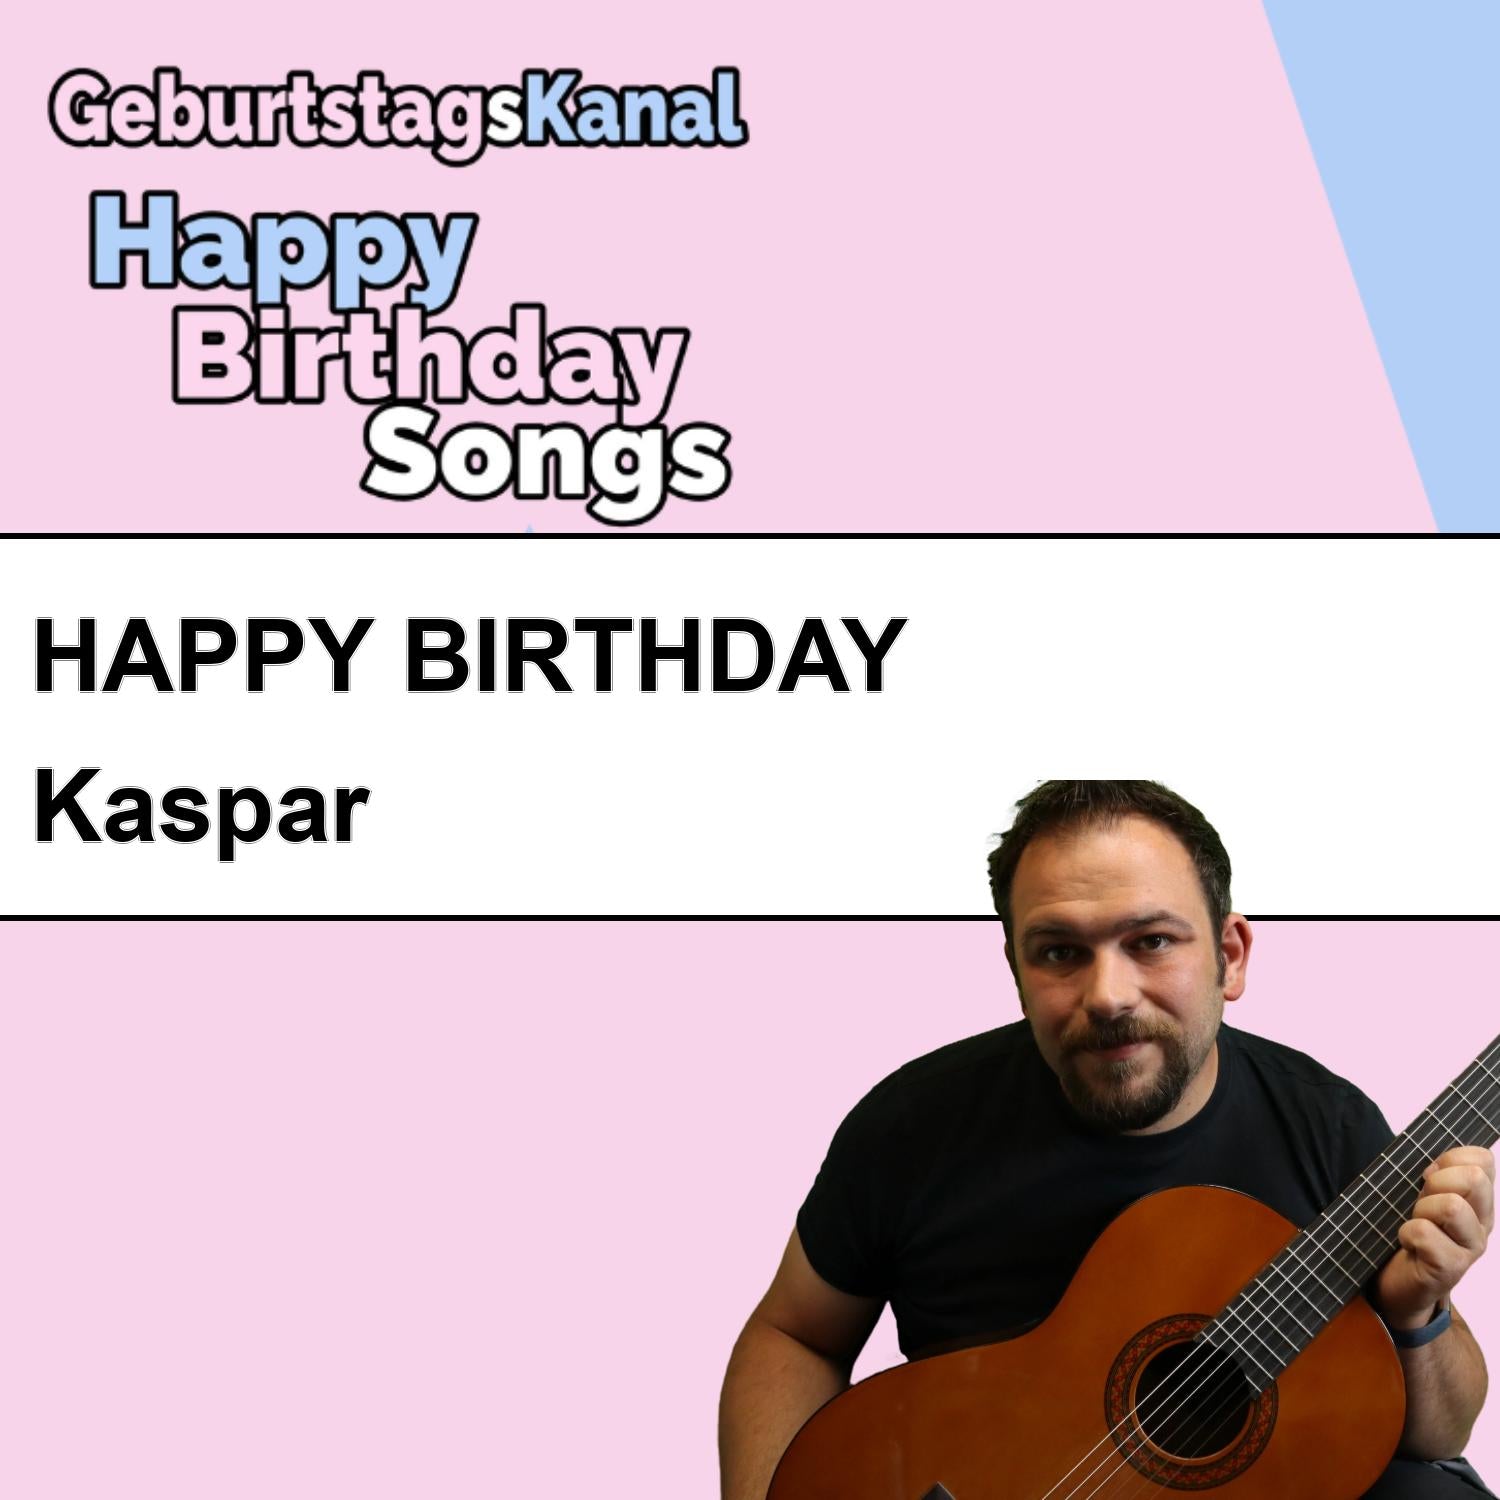 Produktbild Happy Birthday to you Kaspar mit Wunschgrußbotschaft